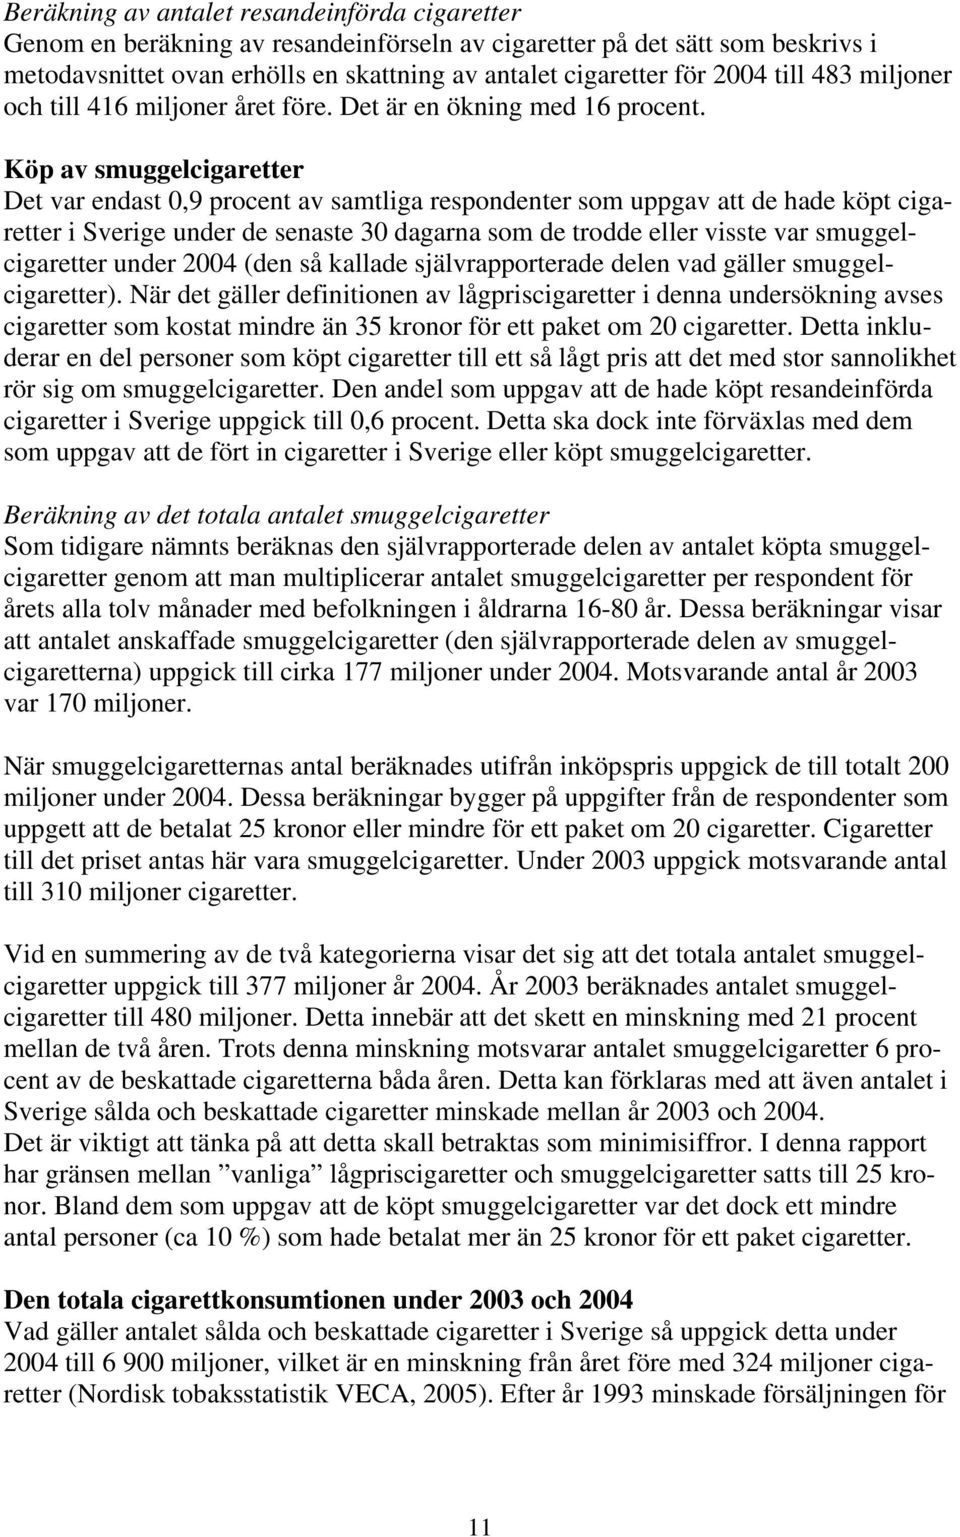 Köp av smuggelcigaretter Det var endast 0,9 procent av samtliga respondenter som uppgav att de hade köpt cigaretter i Sverige under de senaste 30 dagarna som de trodde eller visste var